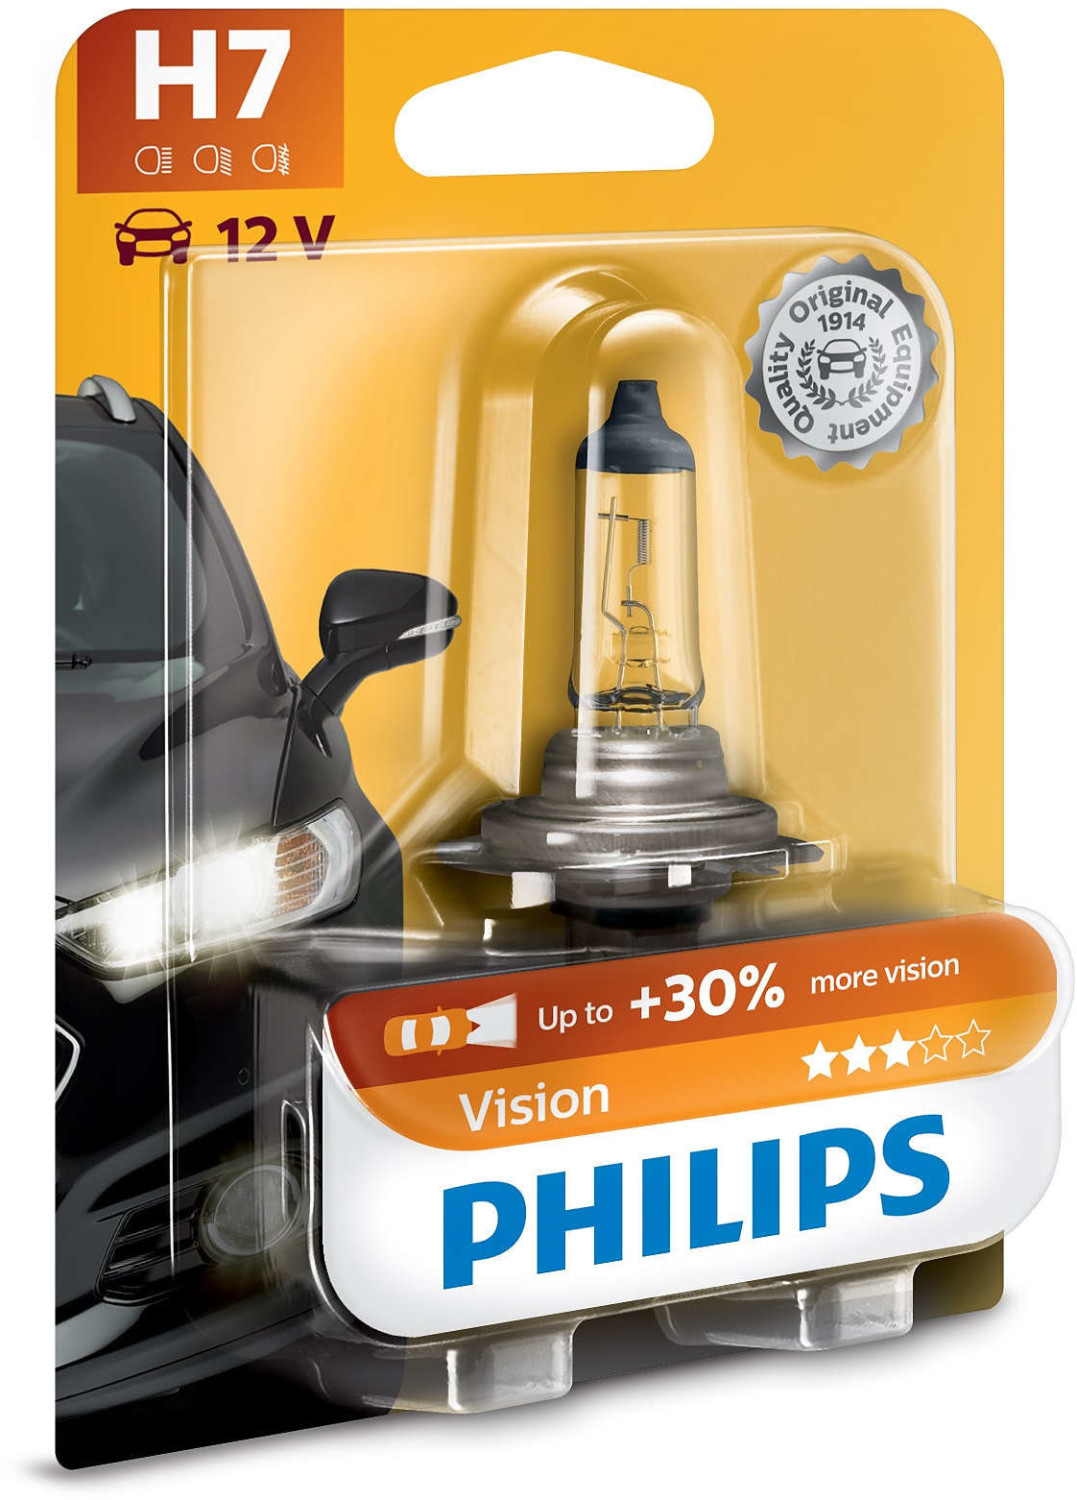 Soldes Philips WhiteVision ultra H7 (2 x 12V 55W + 2 x W5W) 2024 au  meilleur prix sur